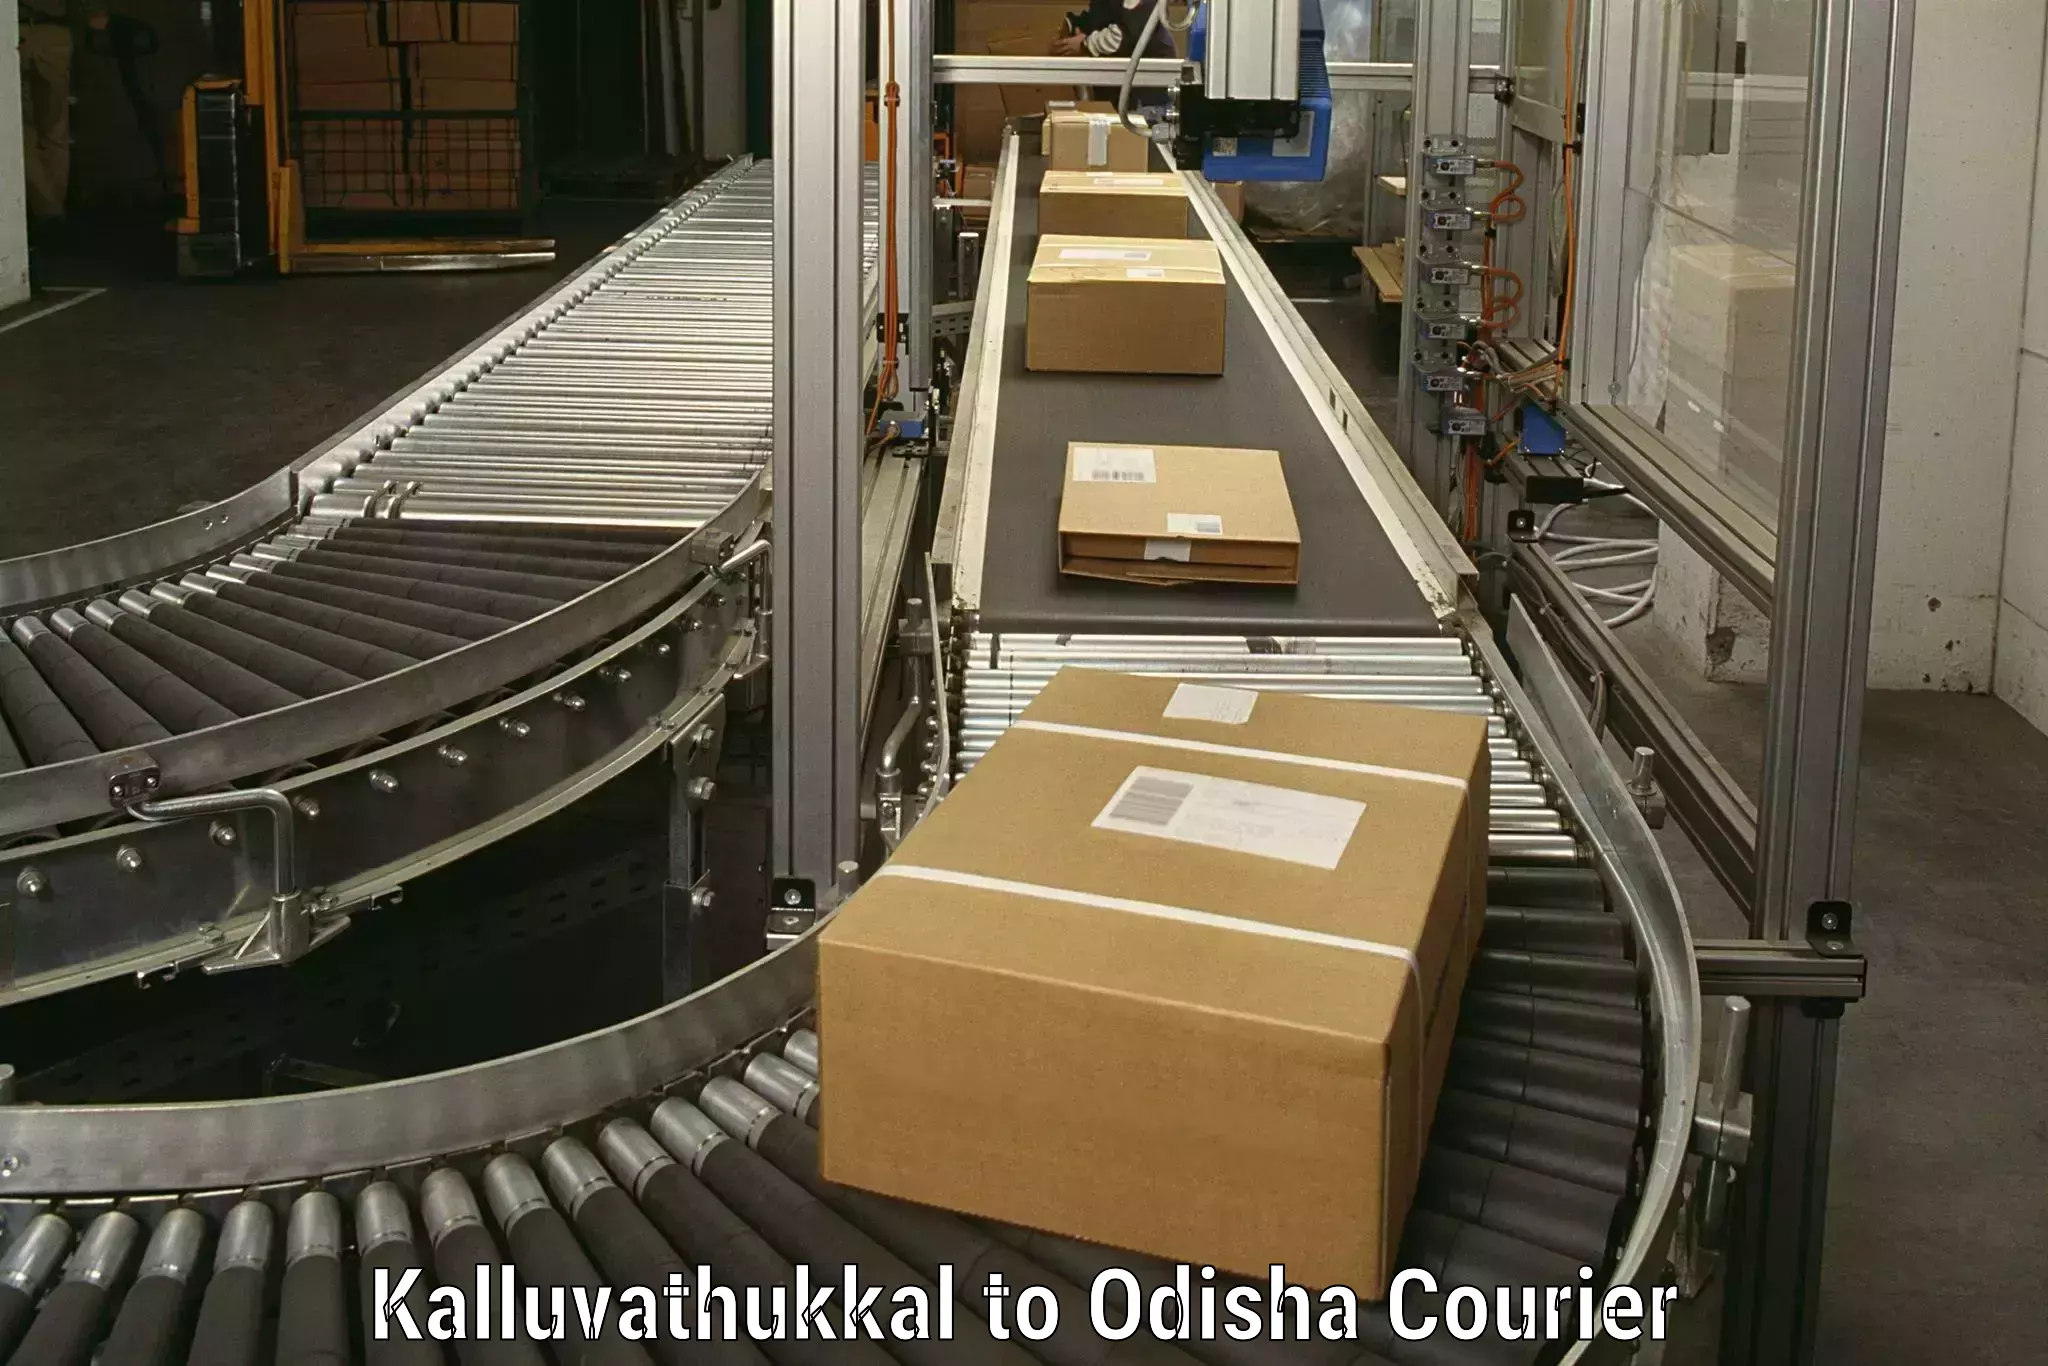 Furniture moving specialists Kalluvathukkal to Odisha